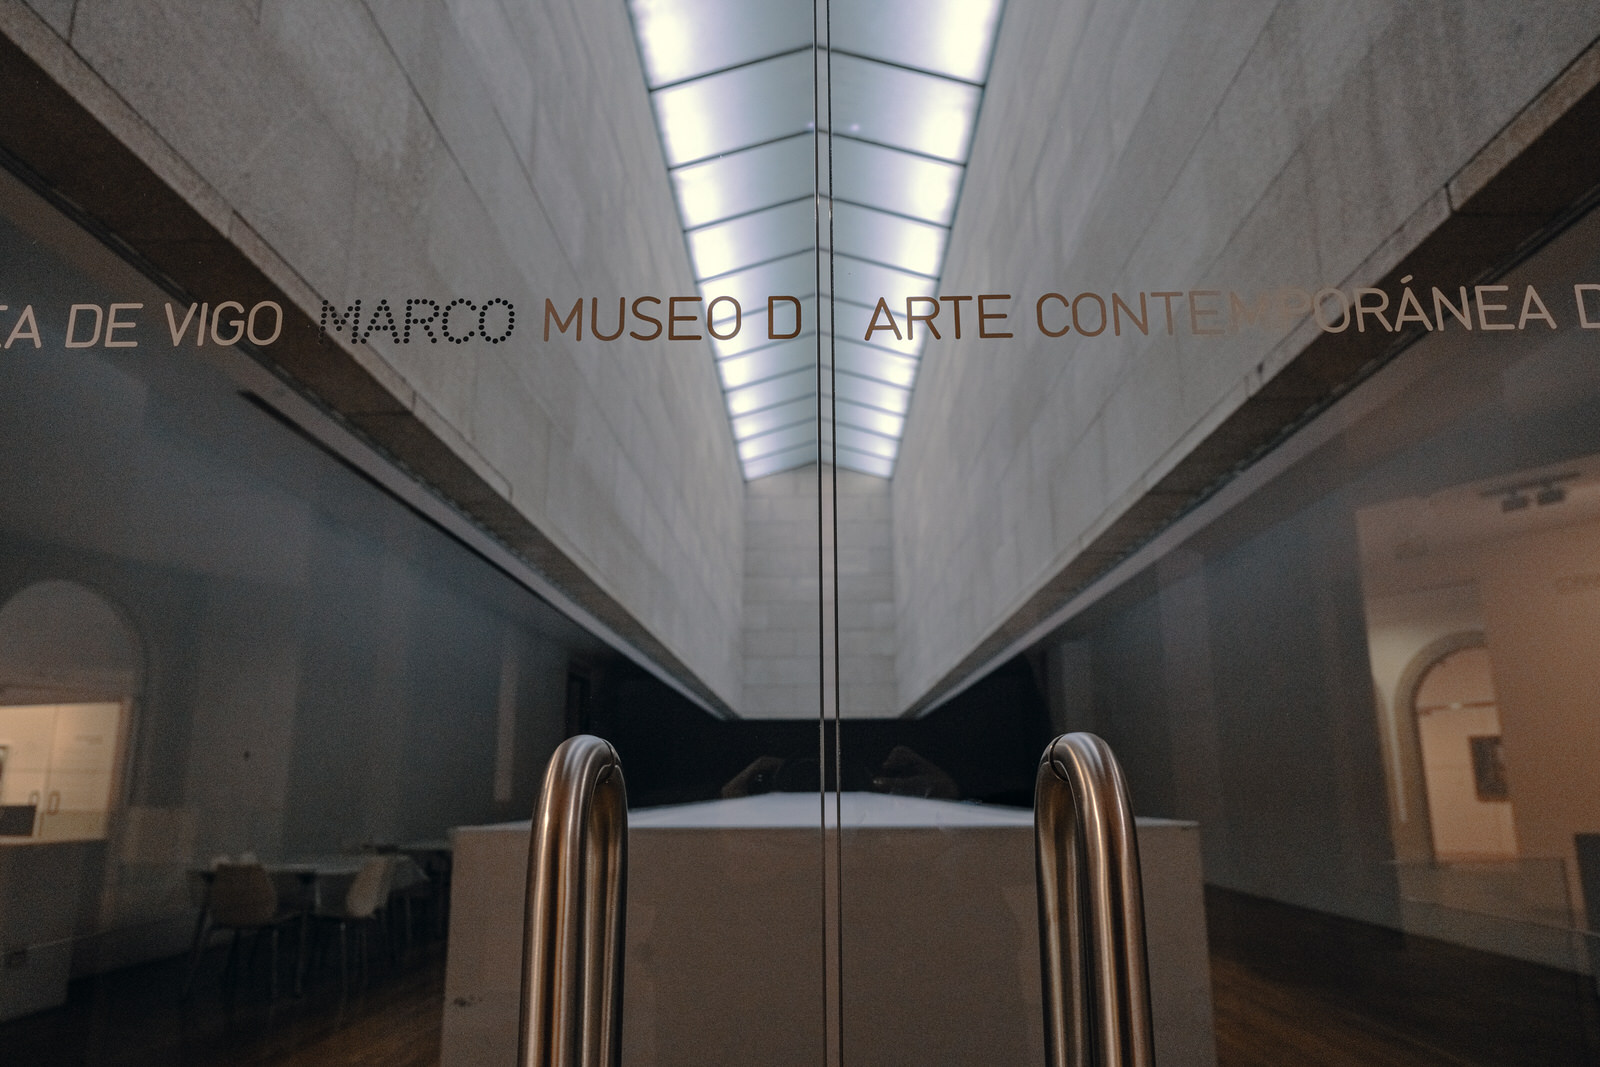 Imagen de la entrada del Museo de Arte